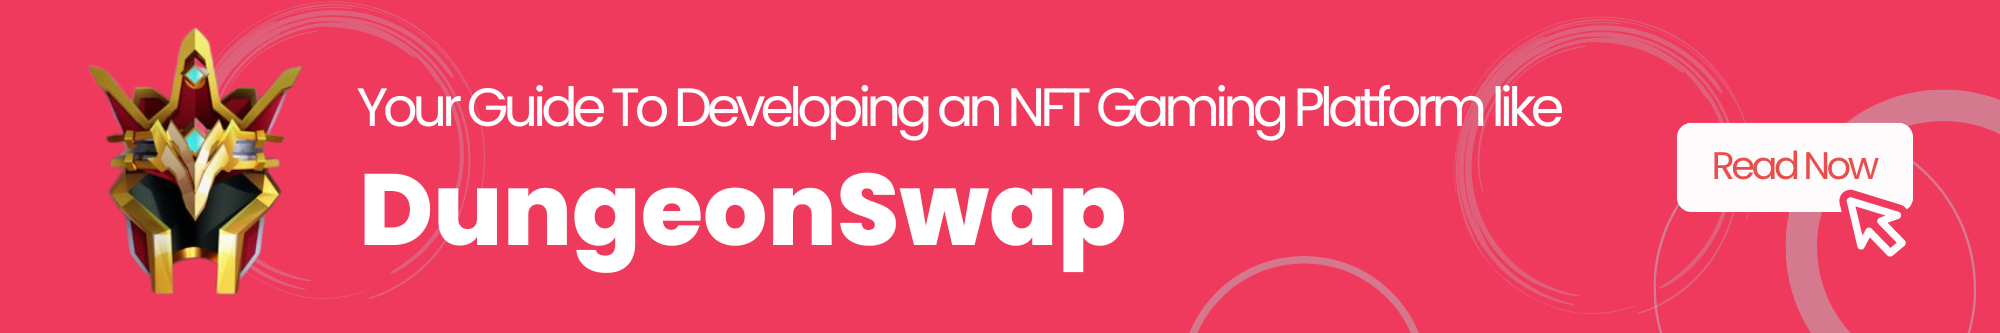 NFT Gaming Platform like DungeonSwap